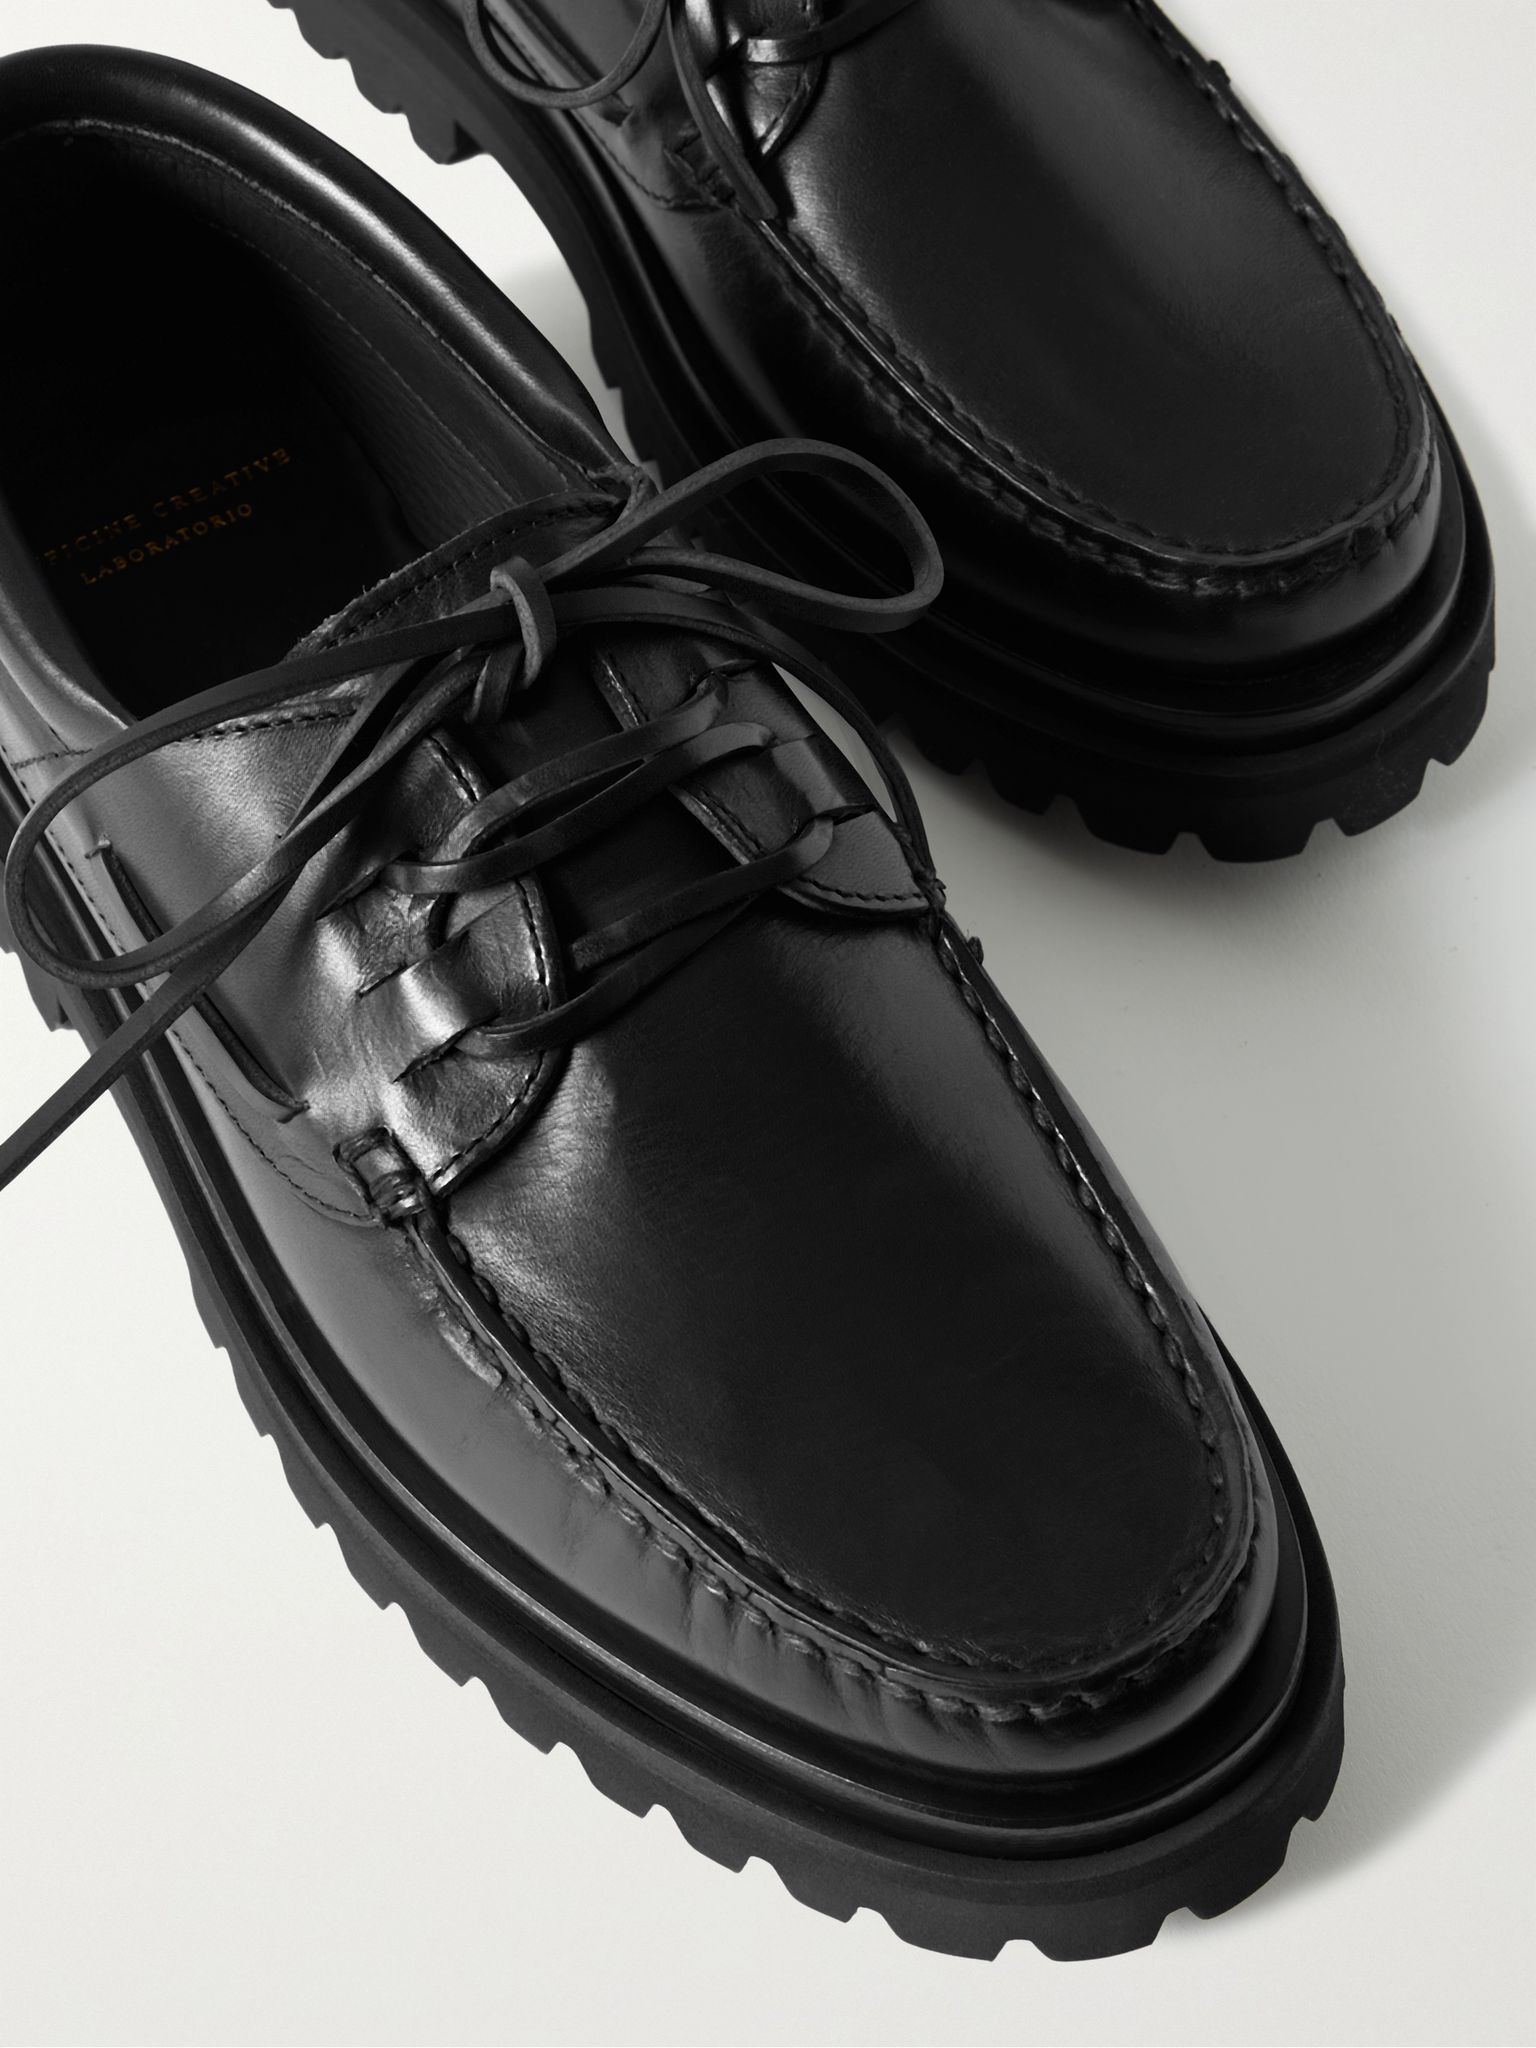 Black Heritage Leather Boat Shoes | OFFICINE CREATIVE | MR PORTER